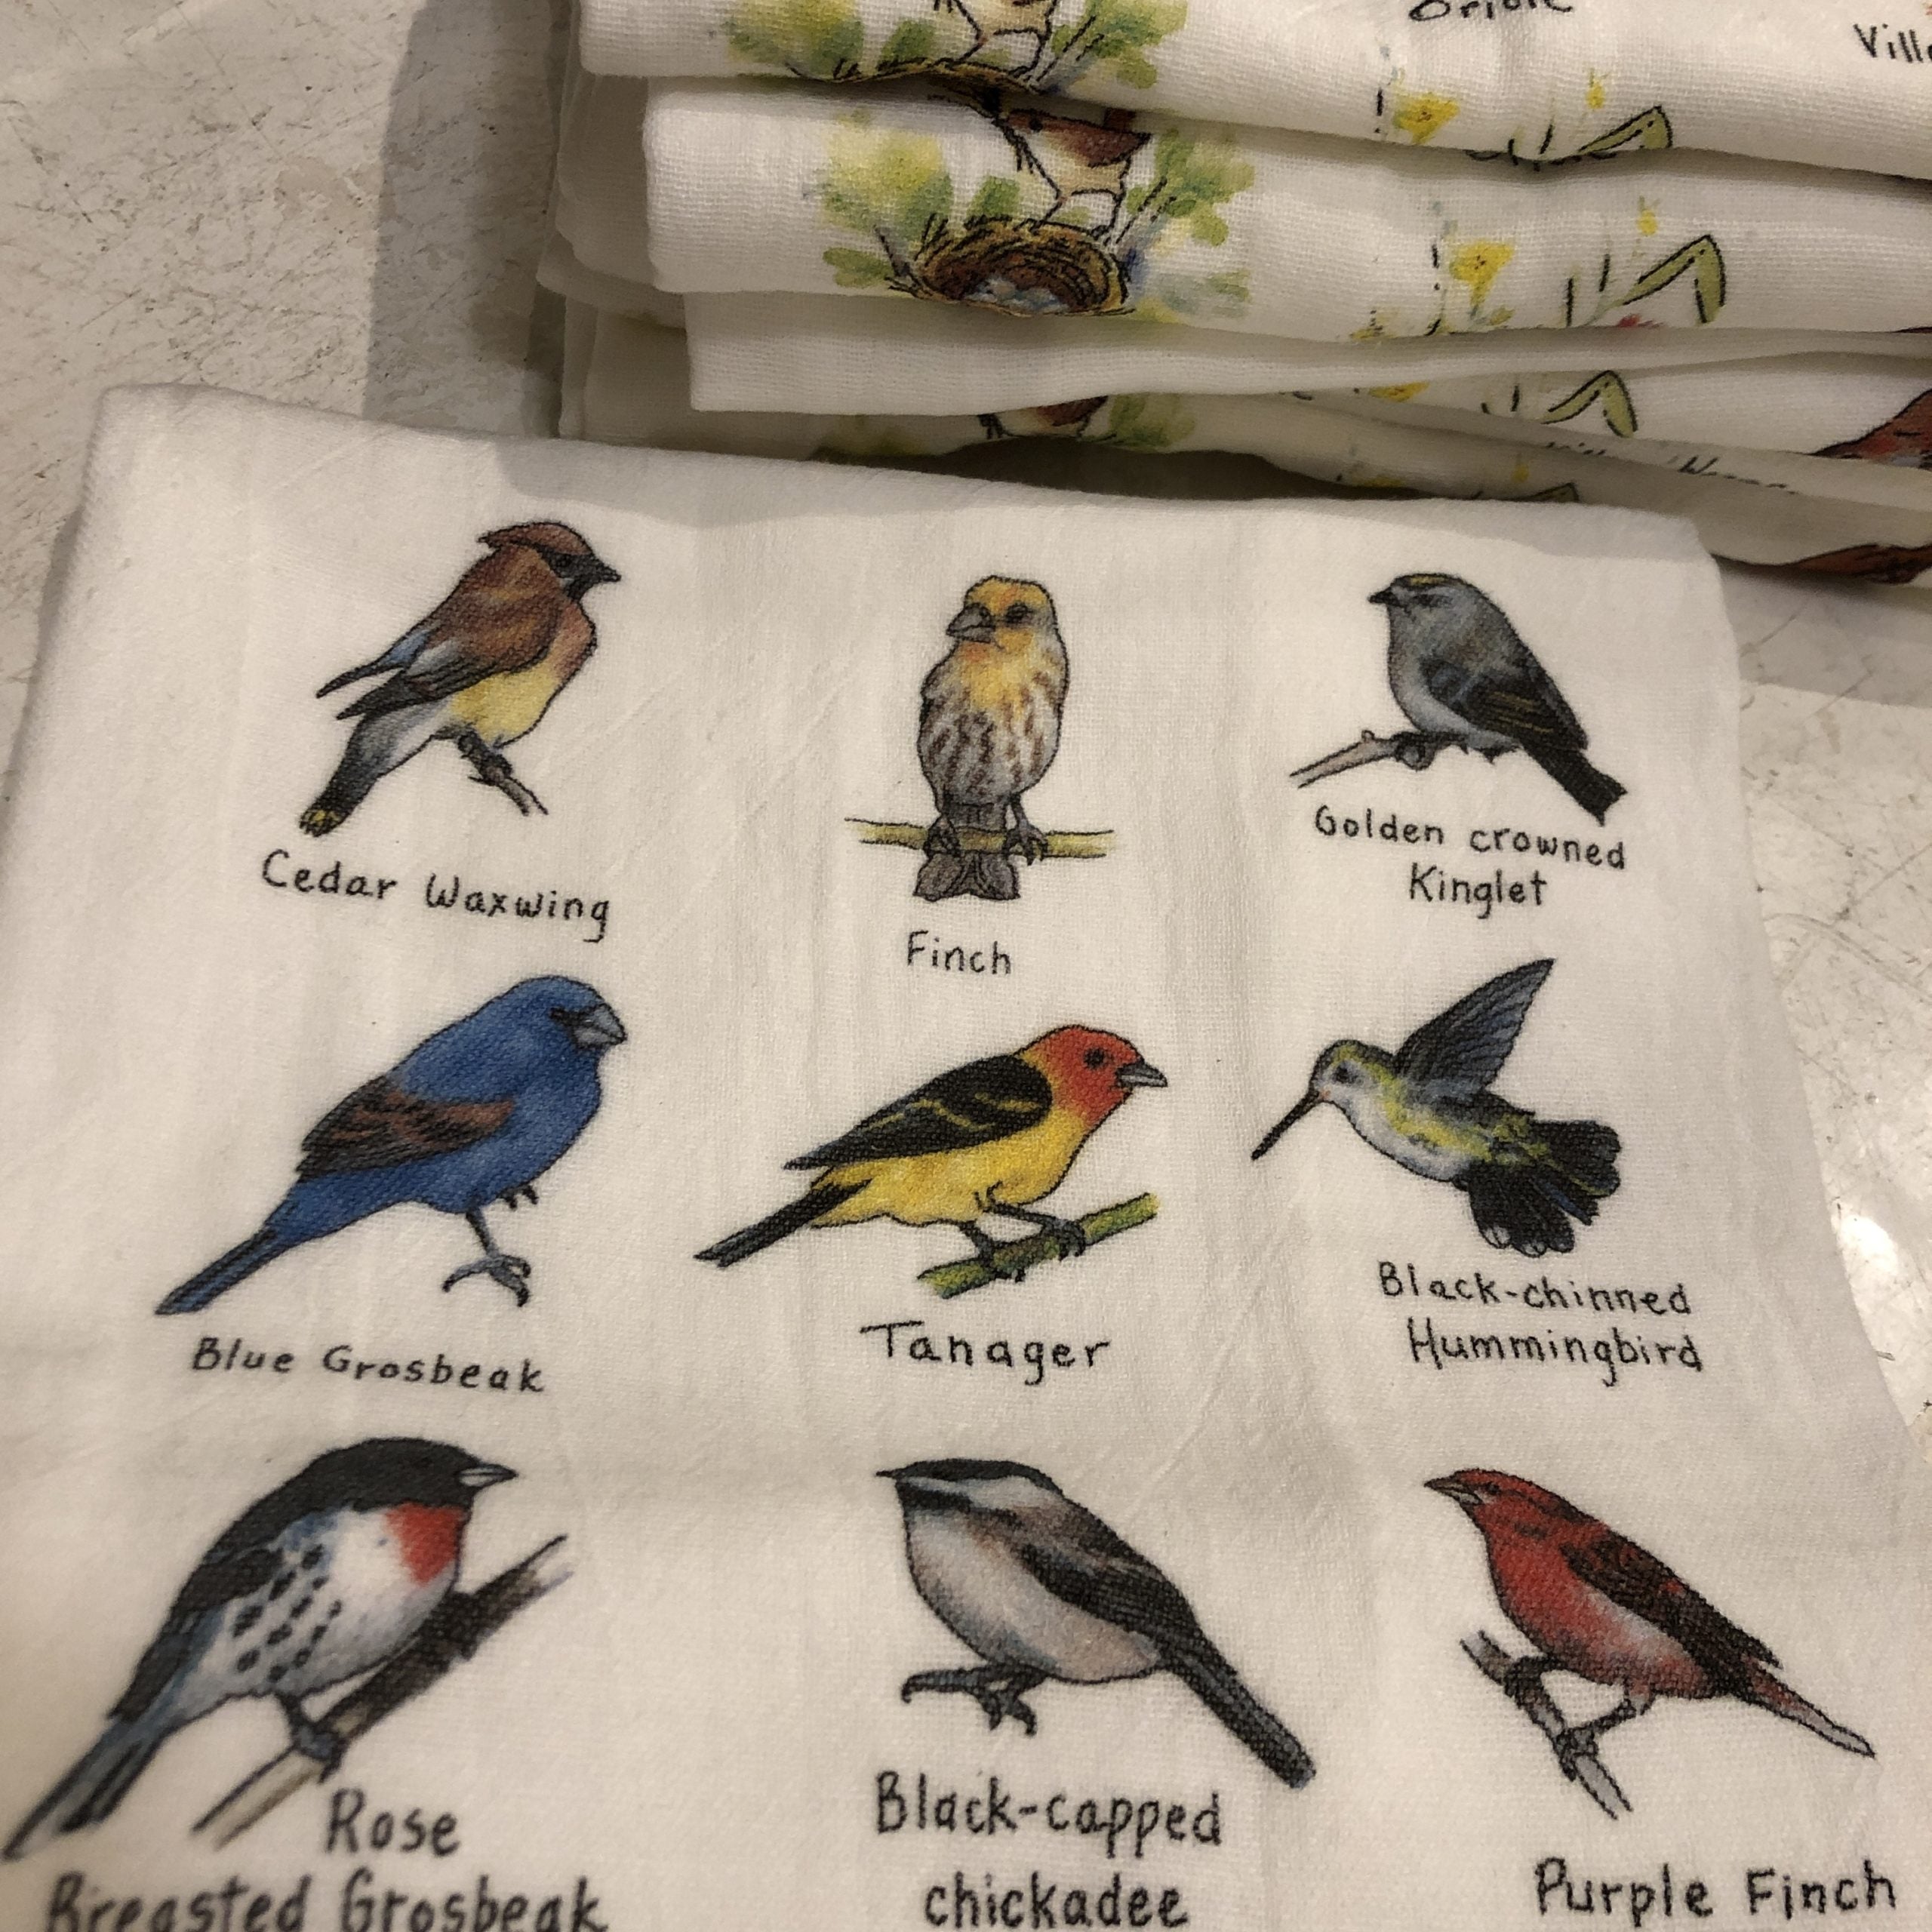 Flour Sack Kitchen Towels WHALES Flour Sack Bar Towels Natural